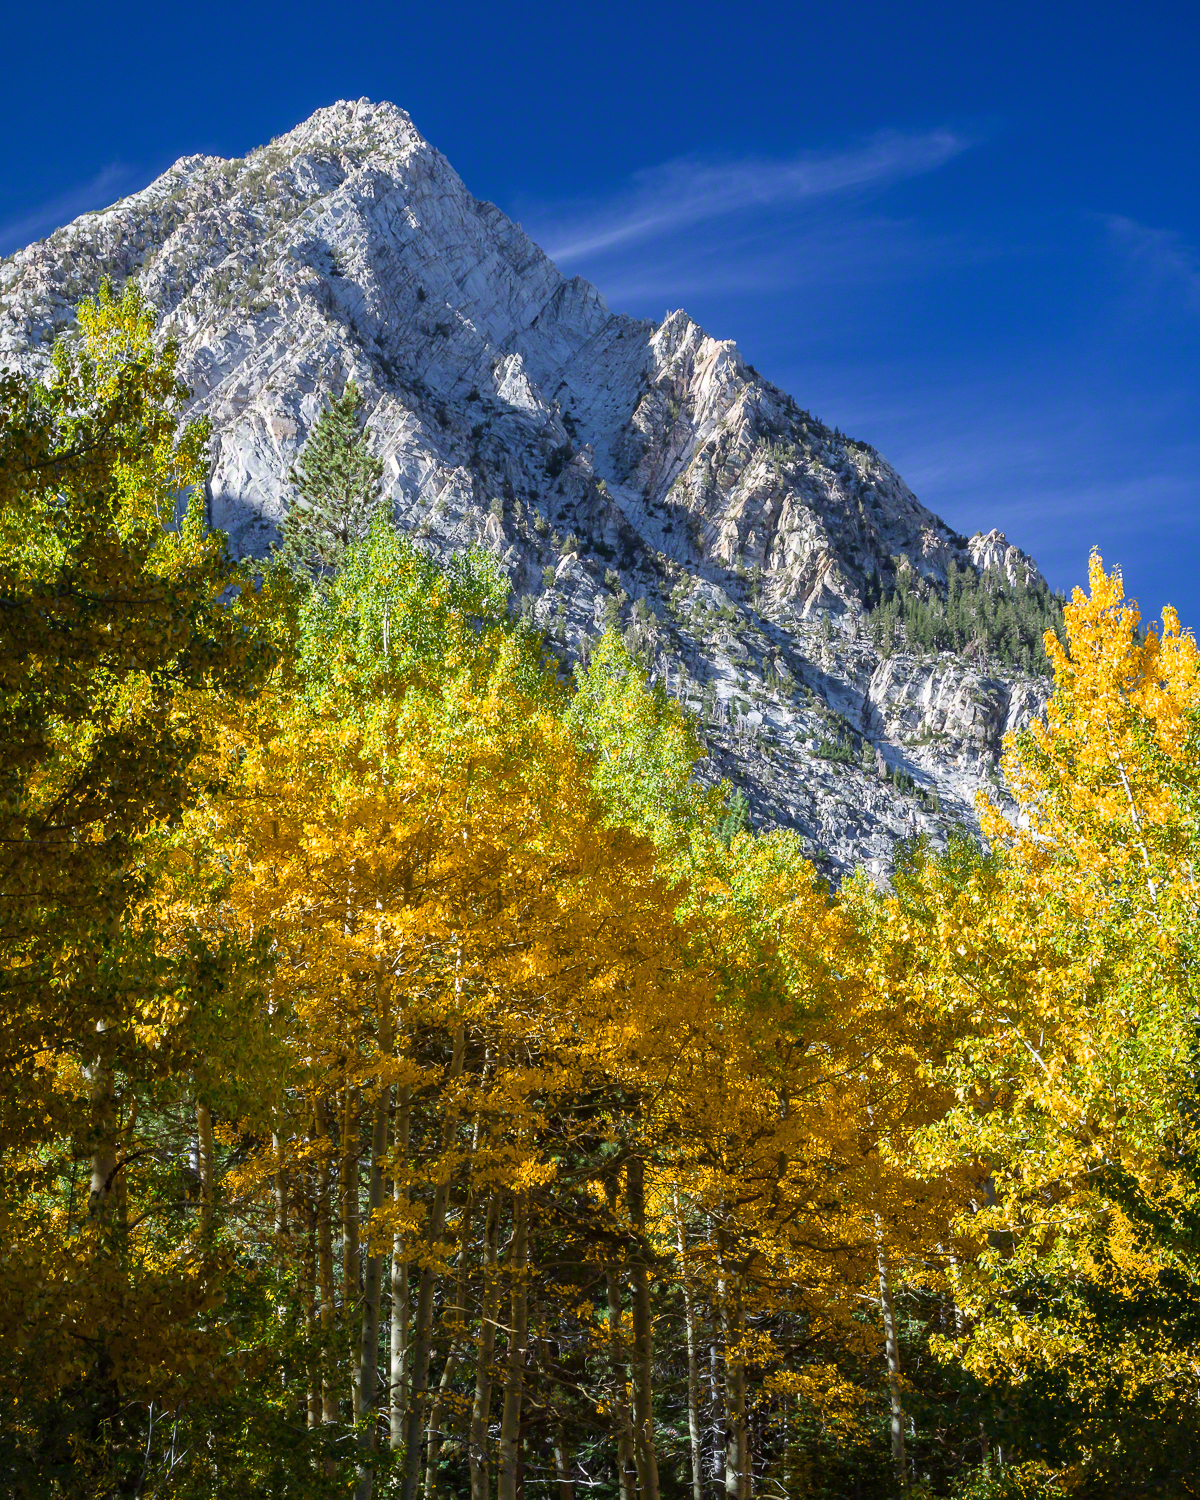 Fall in the High Sierras, Sierra Nevada Mountains